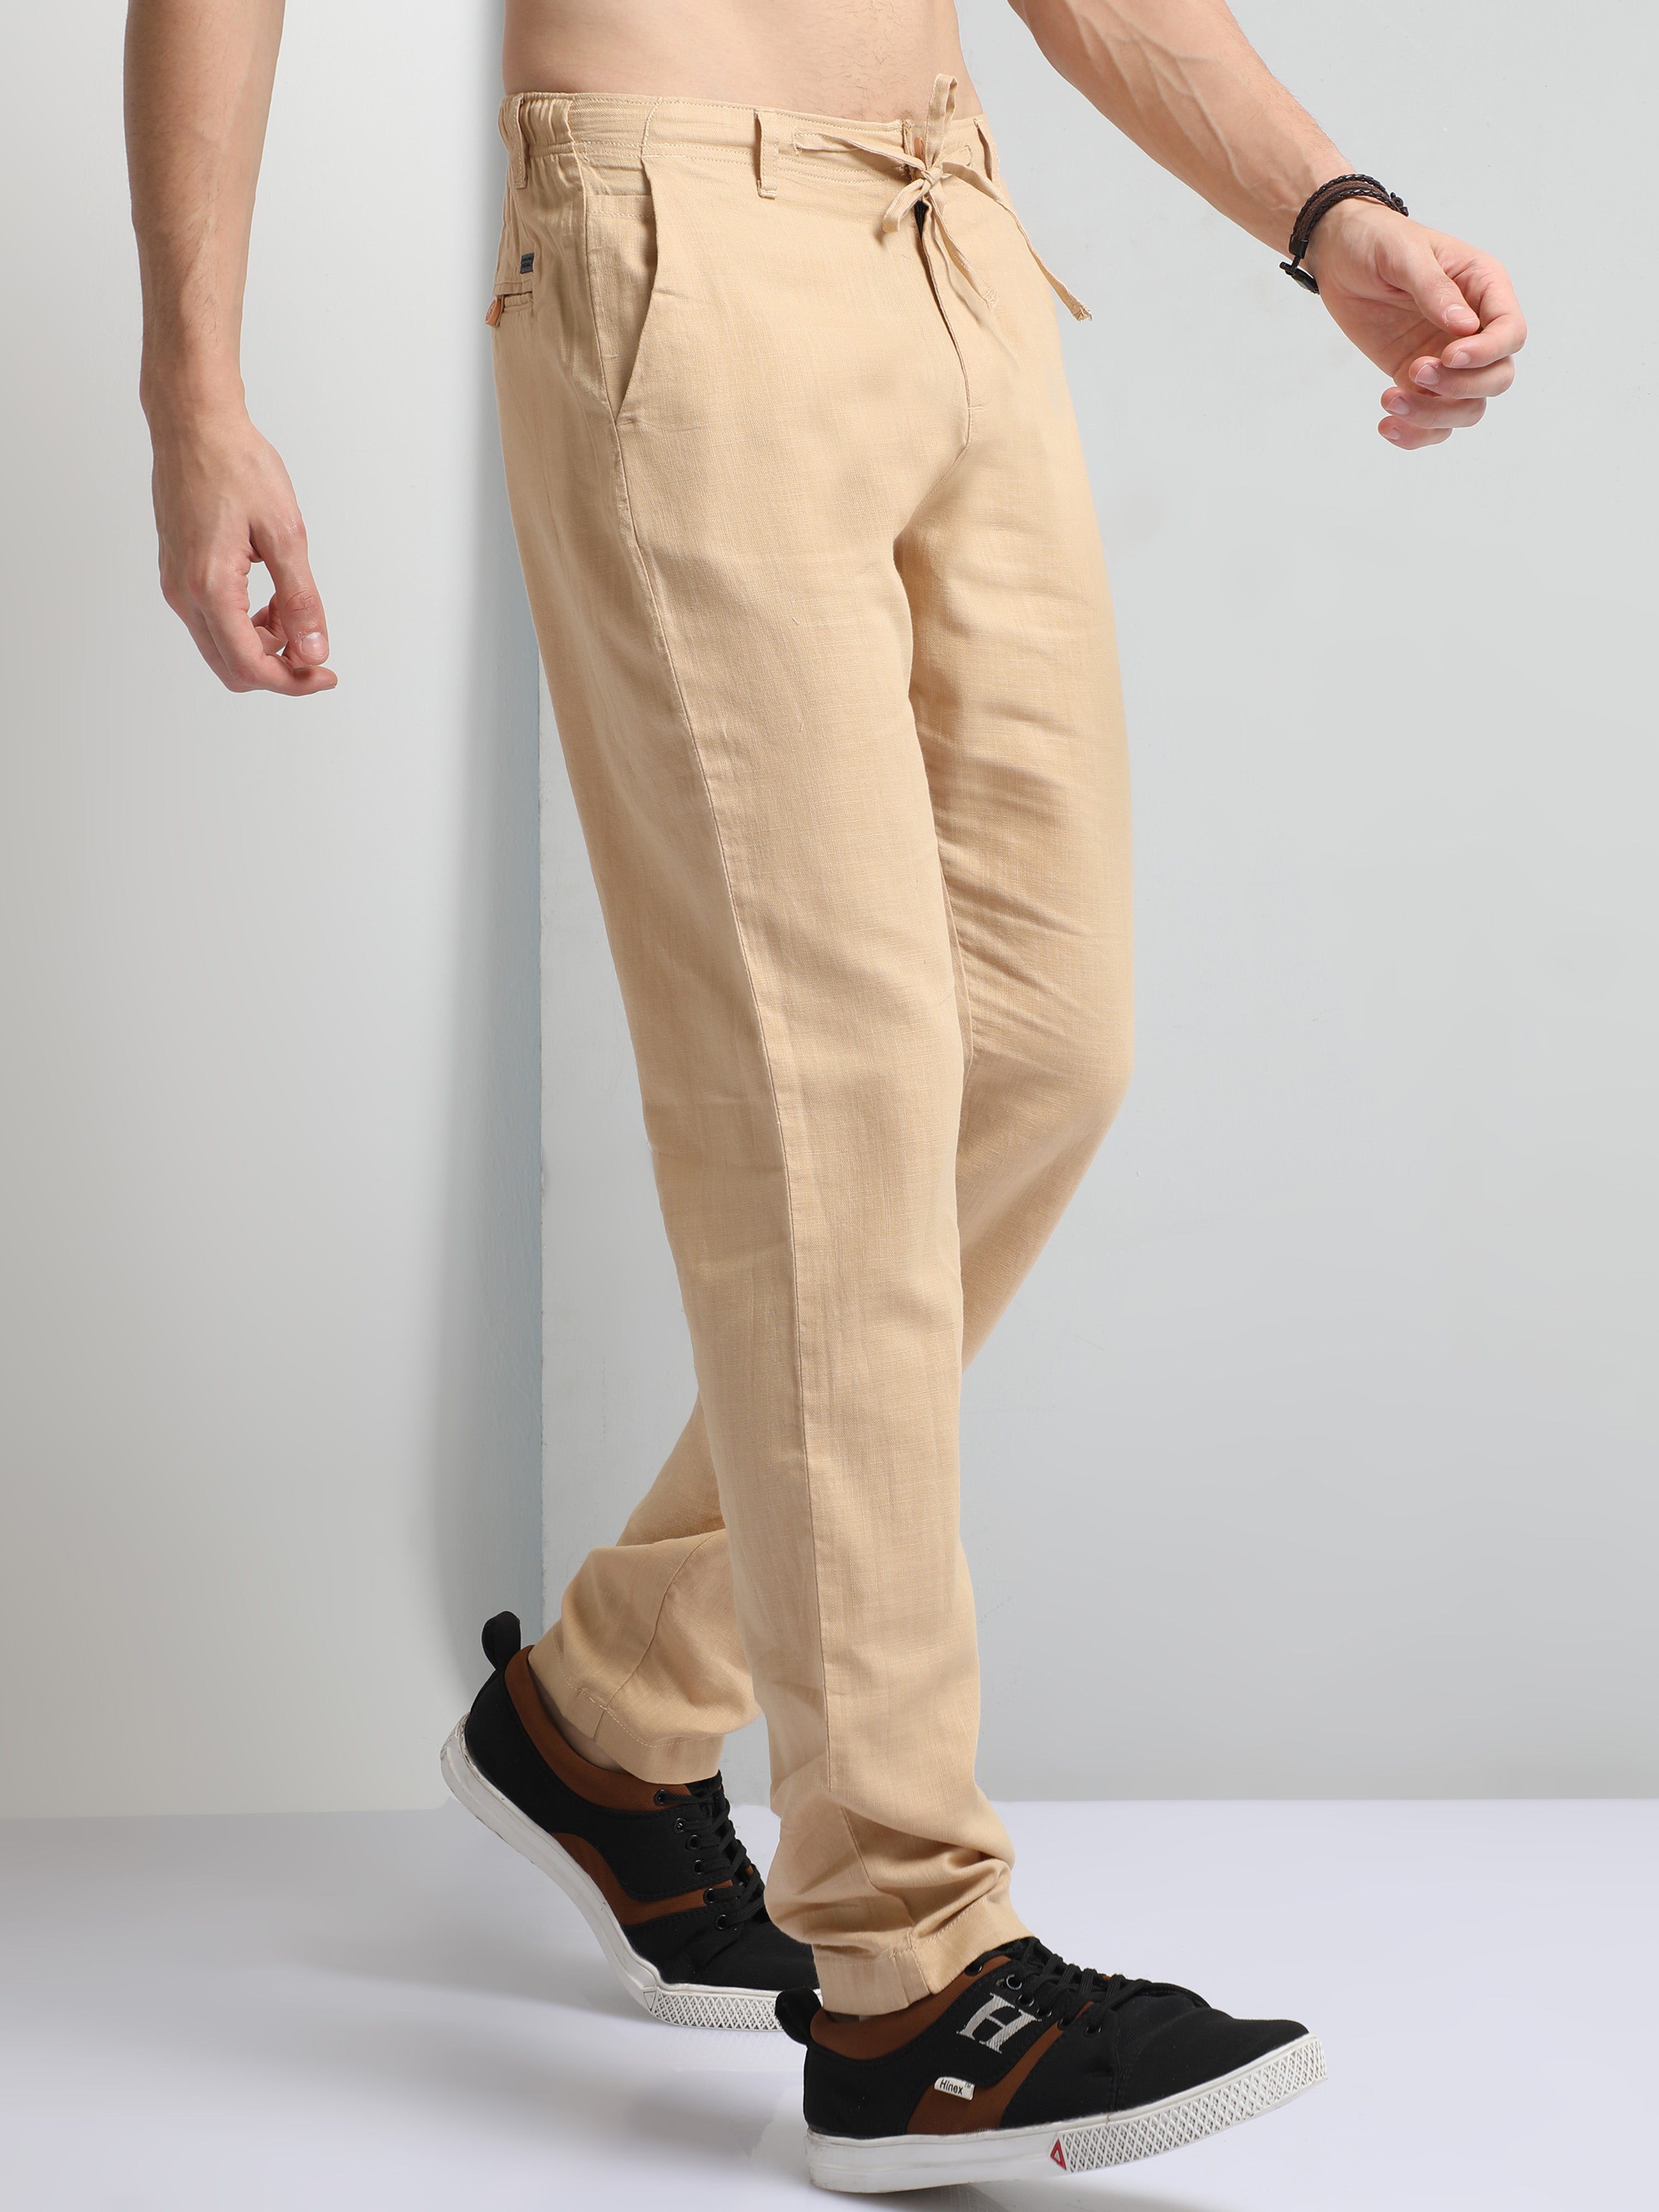 Men's Linen Pants, Linen Trousers for Men, Linen Clothing for Men, Linen  Beach Pants, Cargo Pants, Elastic Waistband Loose Fit Men Pants - Etsy